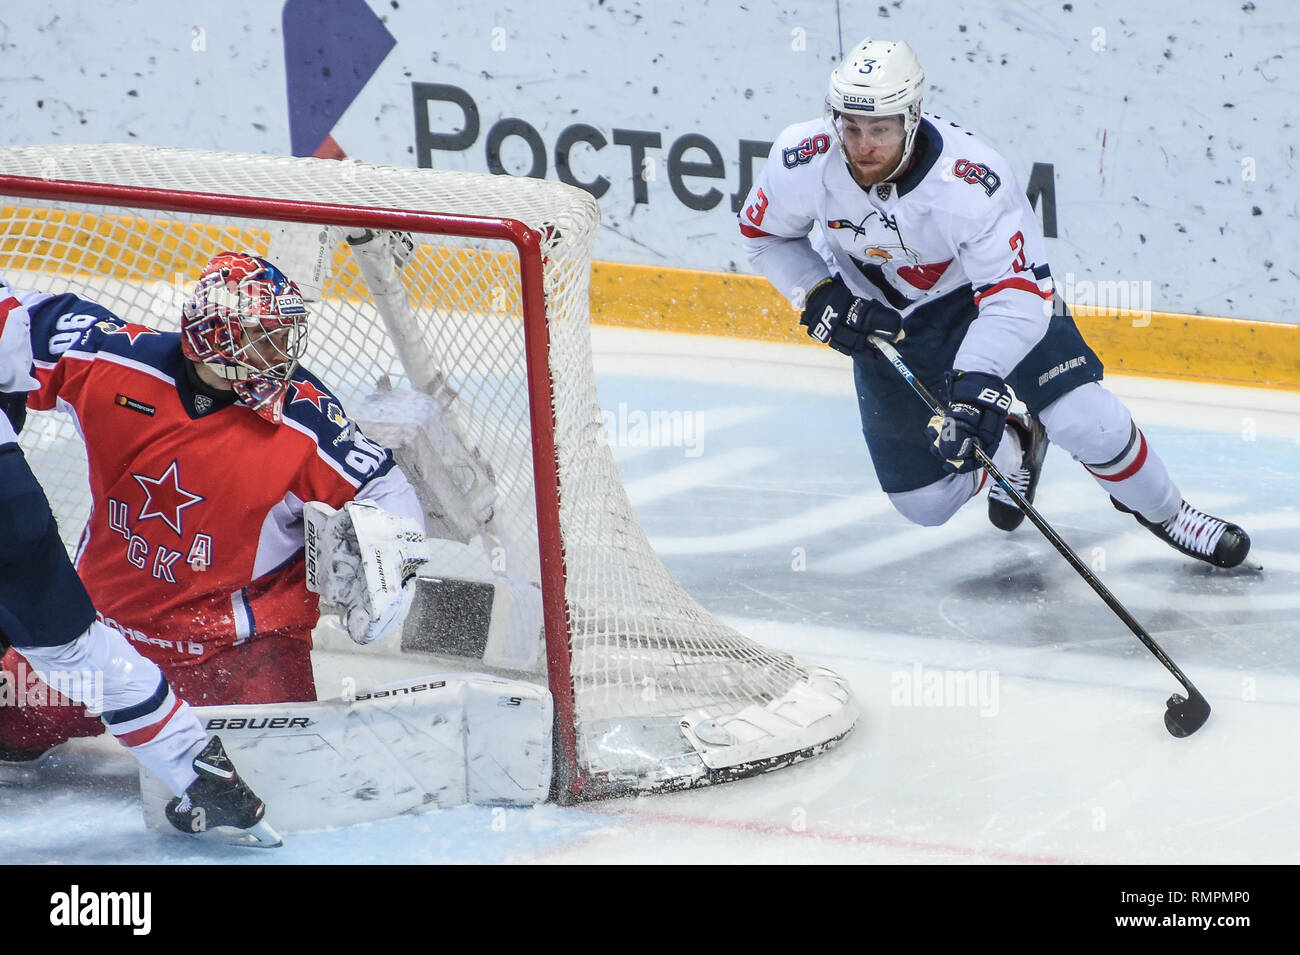 Moscou. Feb 15, 2019. Adam Janosik (R) de Slovan fait concurrence au cours de la KHL 2018-2019 jeu de hockey sur glace entre le CSKA Moscou et Slovan Bratislava à Moscou, Russie le 15 février 2019. Le CSKA a gagné 4-1. Credit : Evgeny Sinitsyn/Xinhua/Alamy Live News Banque D'Images